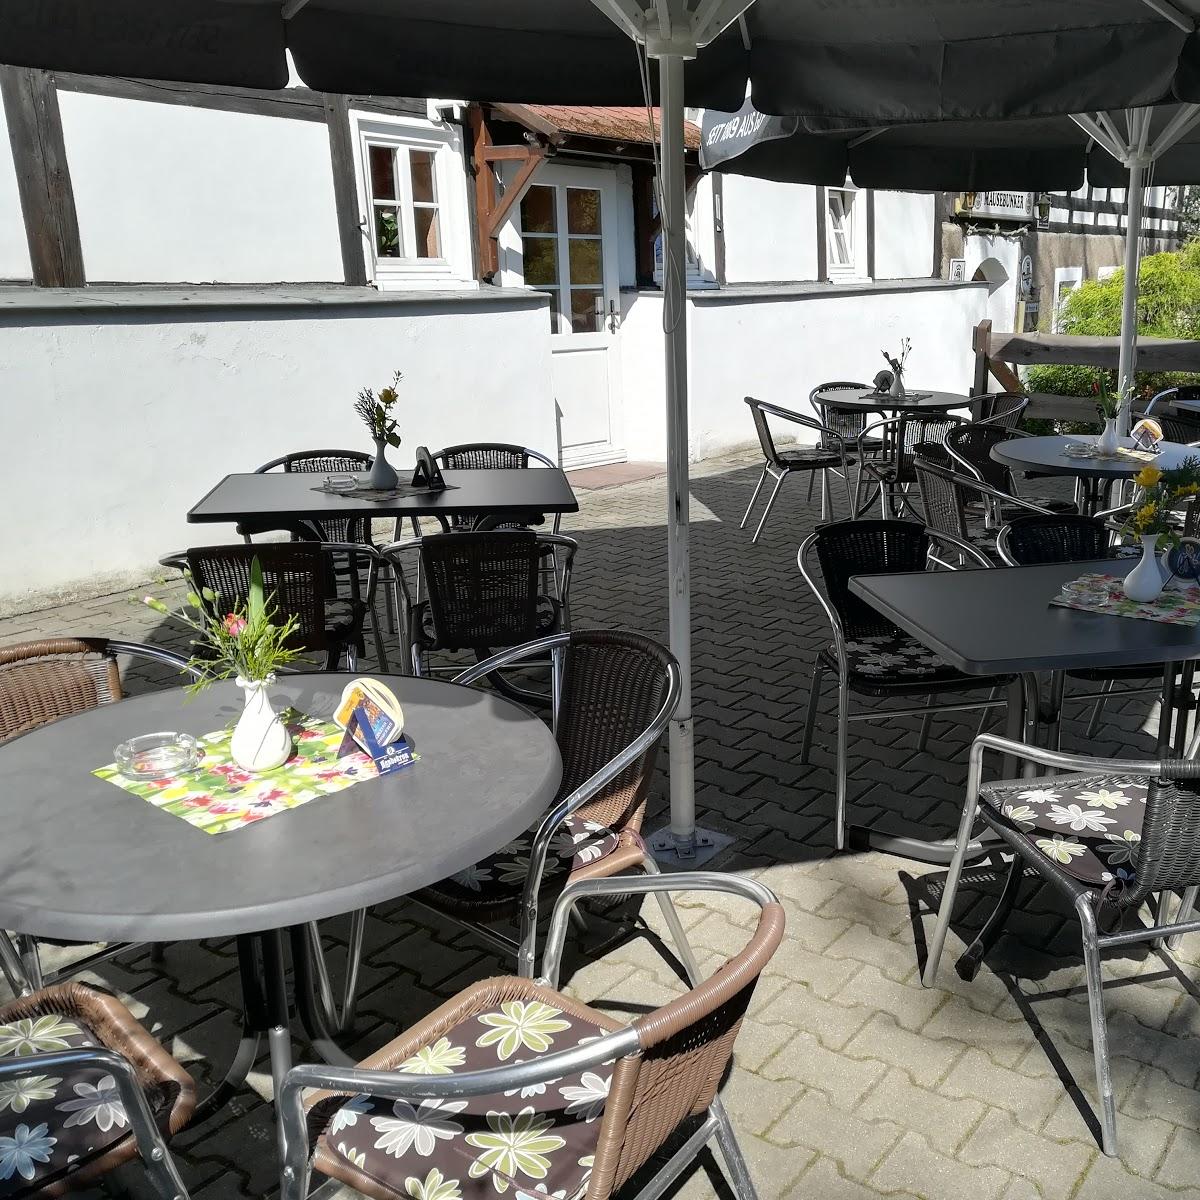 Restaurant "MÄUSEBUNKER" in Reichenbach-Oberlausitz